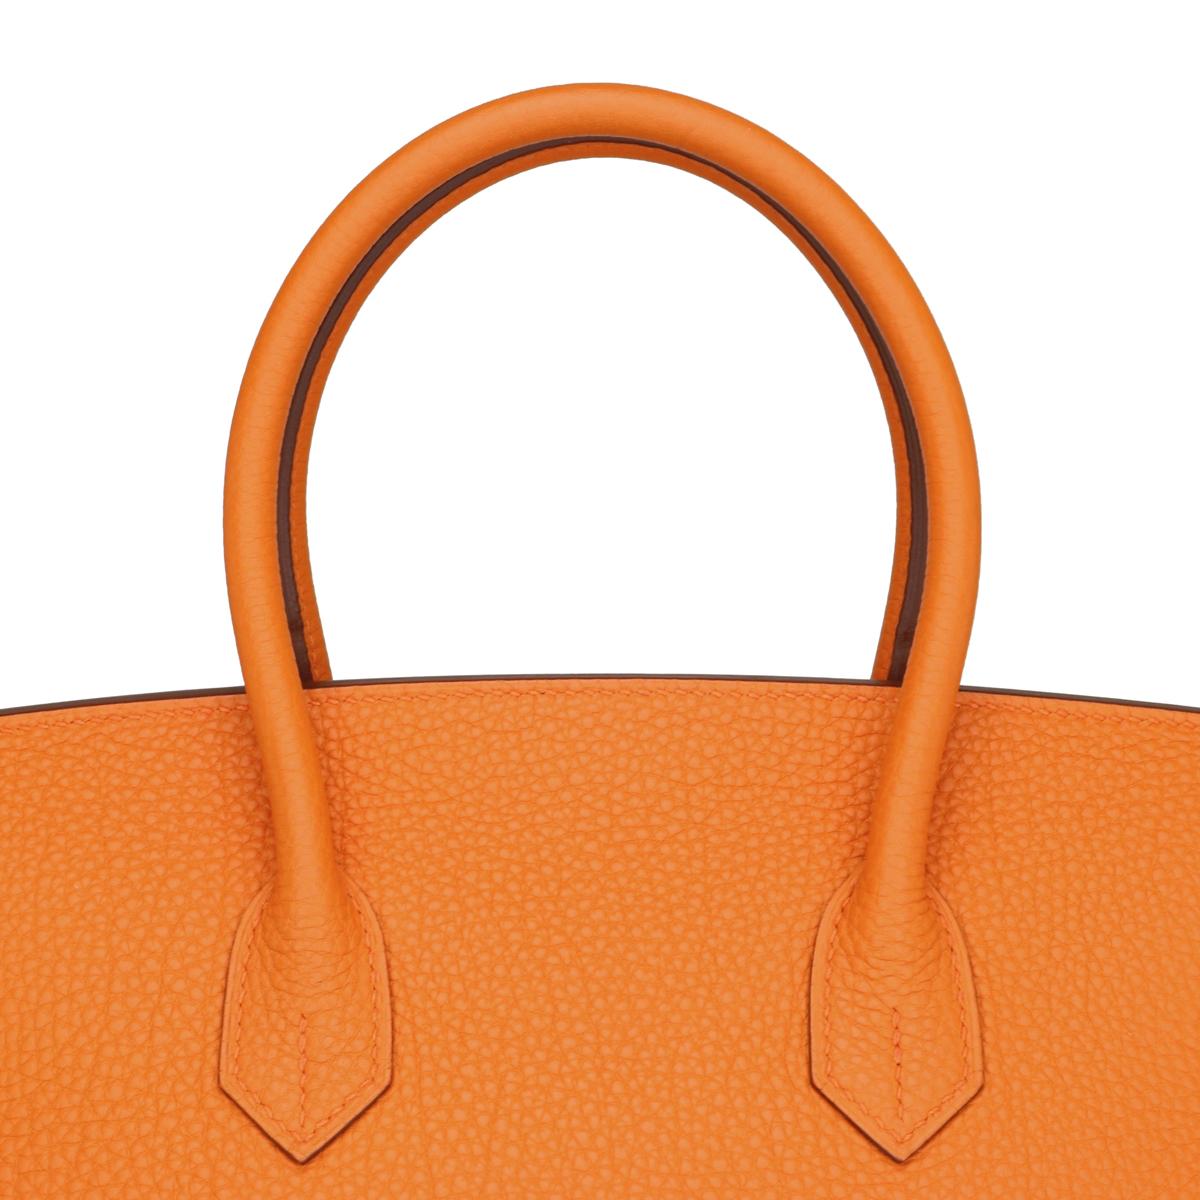 Hermès Birkin Bag 35cm Orange Togo Leather with Palladium Hardware Stamp N 2010 6